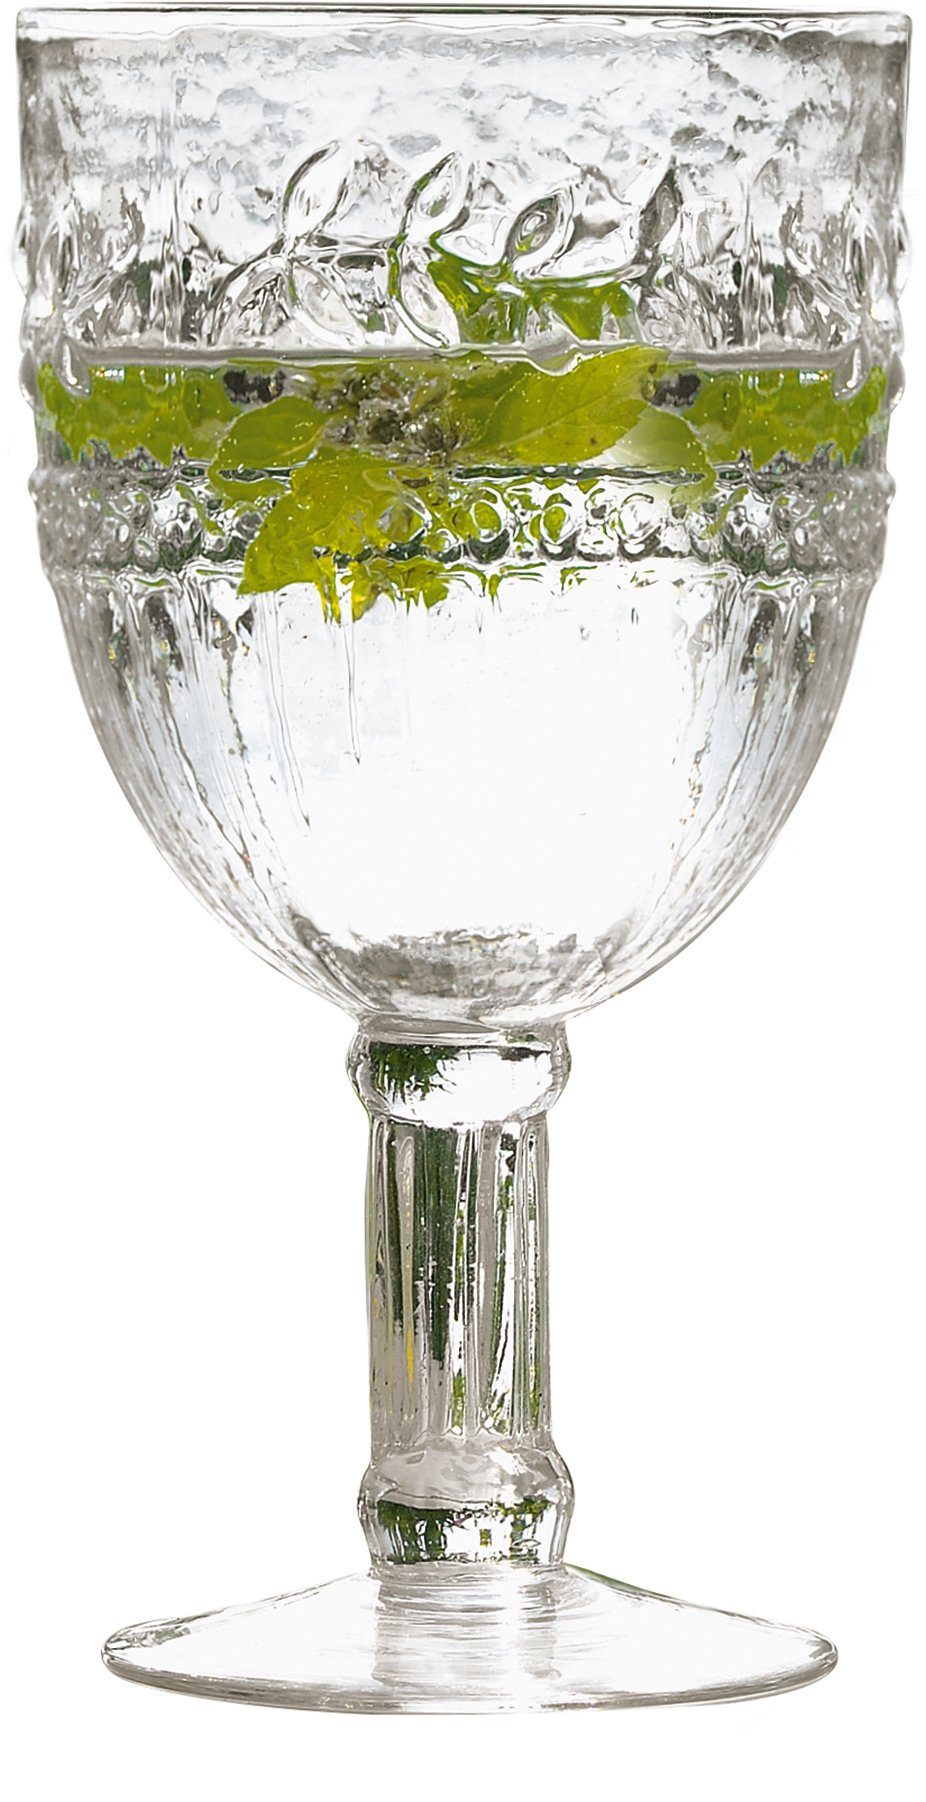 Schneider Rotweinglas, Glas, Recycling-Glas, 6-teilig